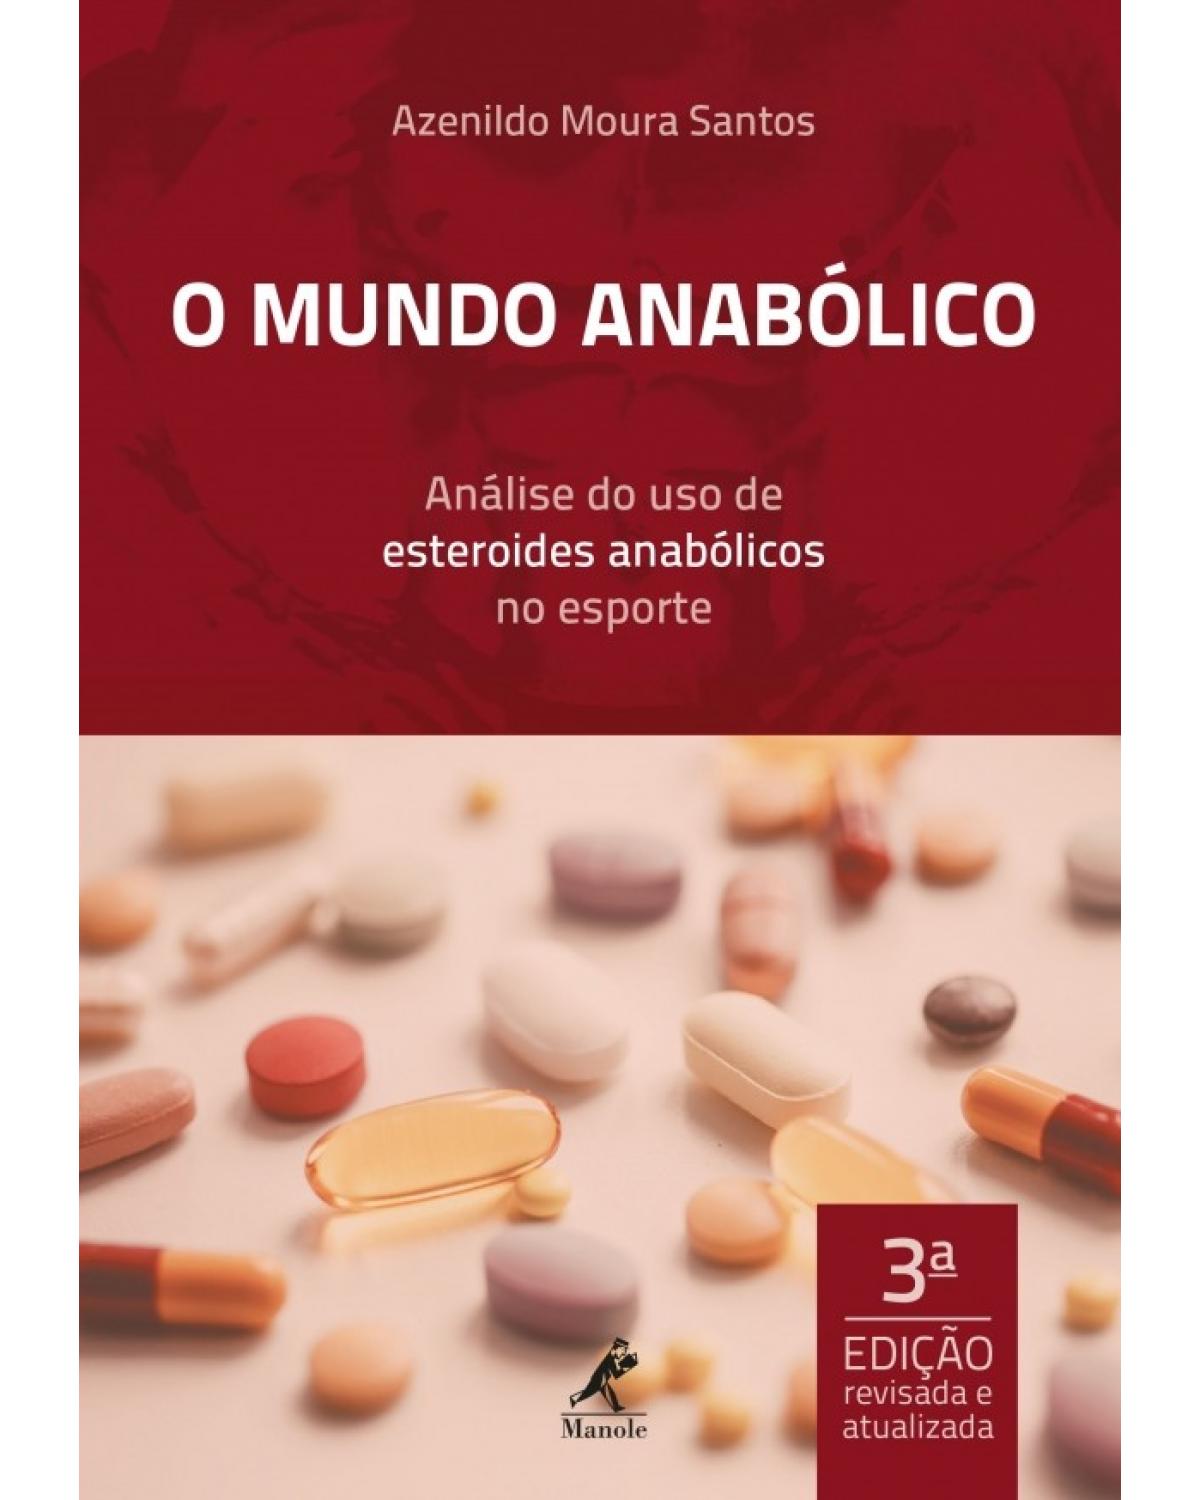 O mundo anabólico - análise do uso de esteroides anabólicos no esporte - 3ª Edição | 2017